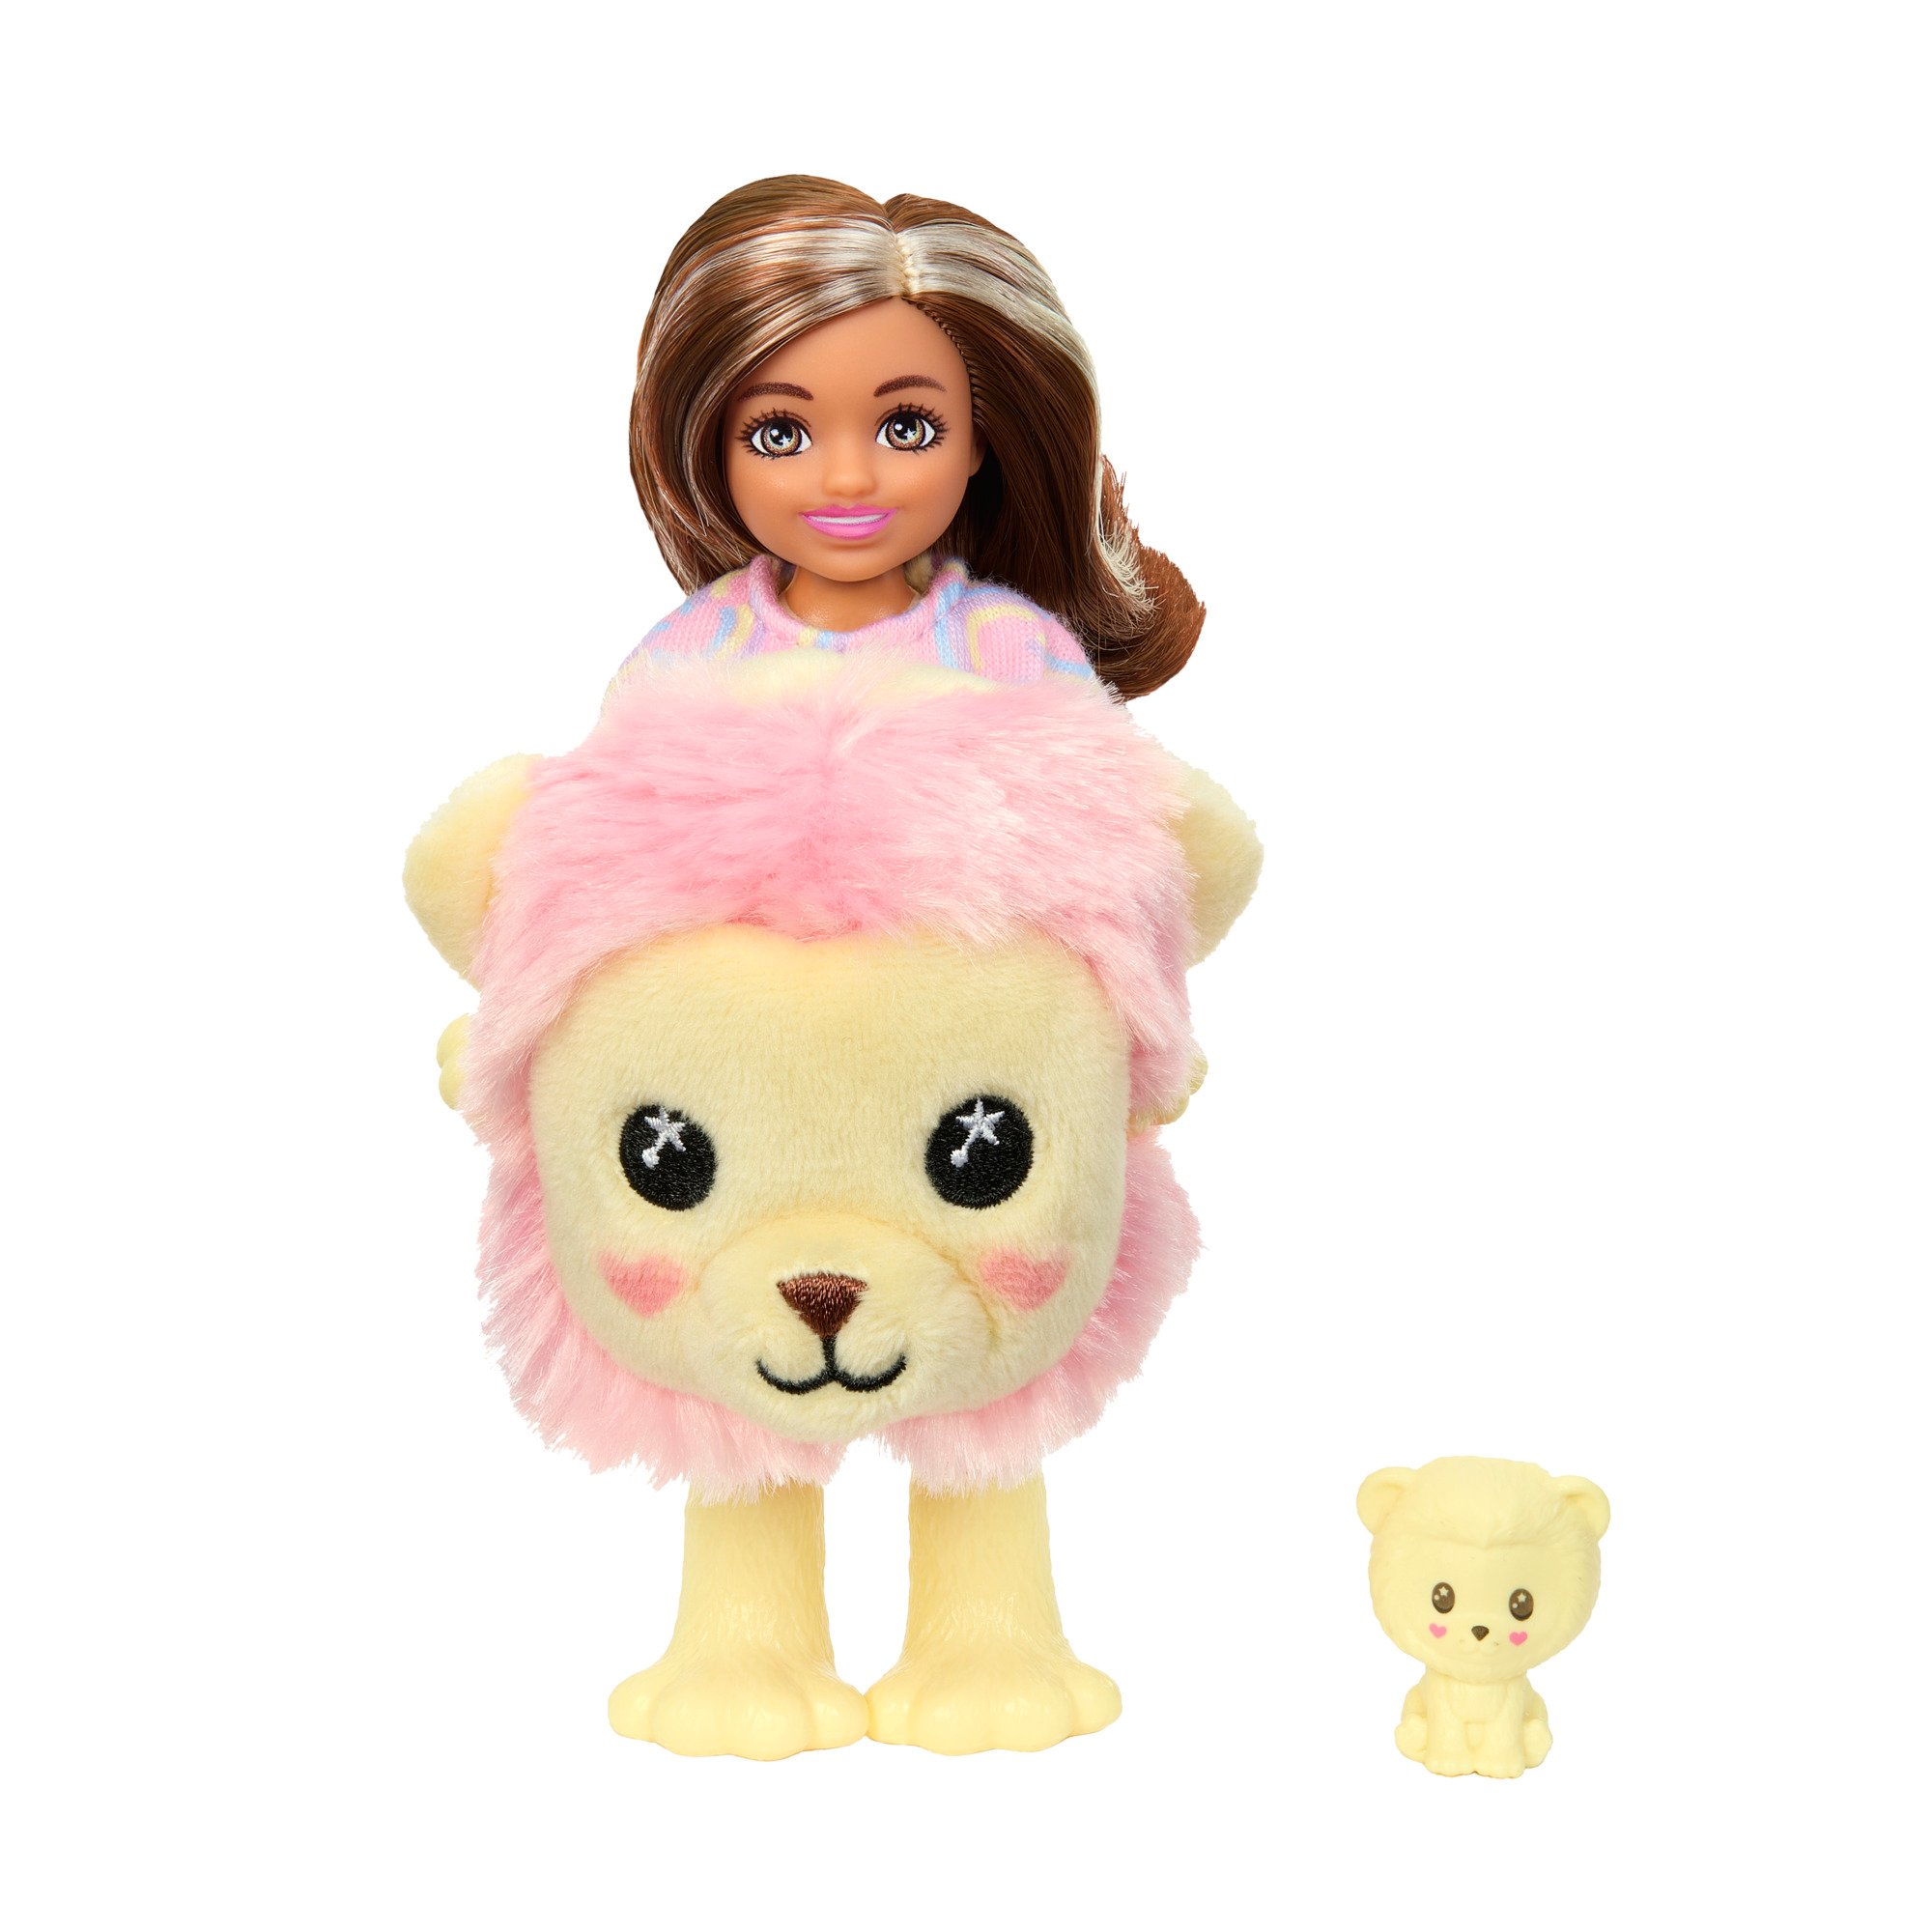 Barbie Cutie Reveal Cozy Cute Tees Chelsea Doll - Plush Lion - Shop Action  Figures & Dolls at H-E-B